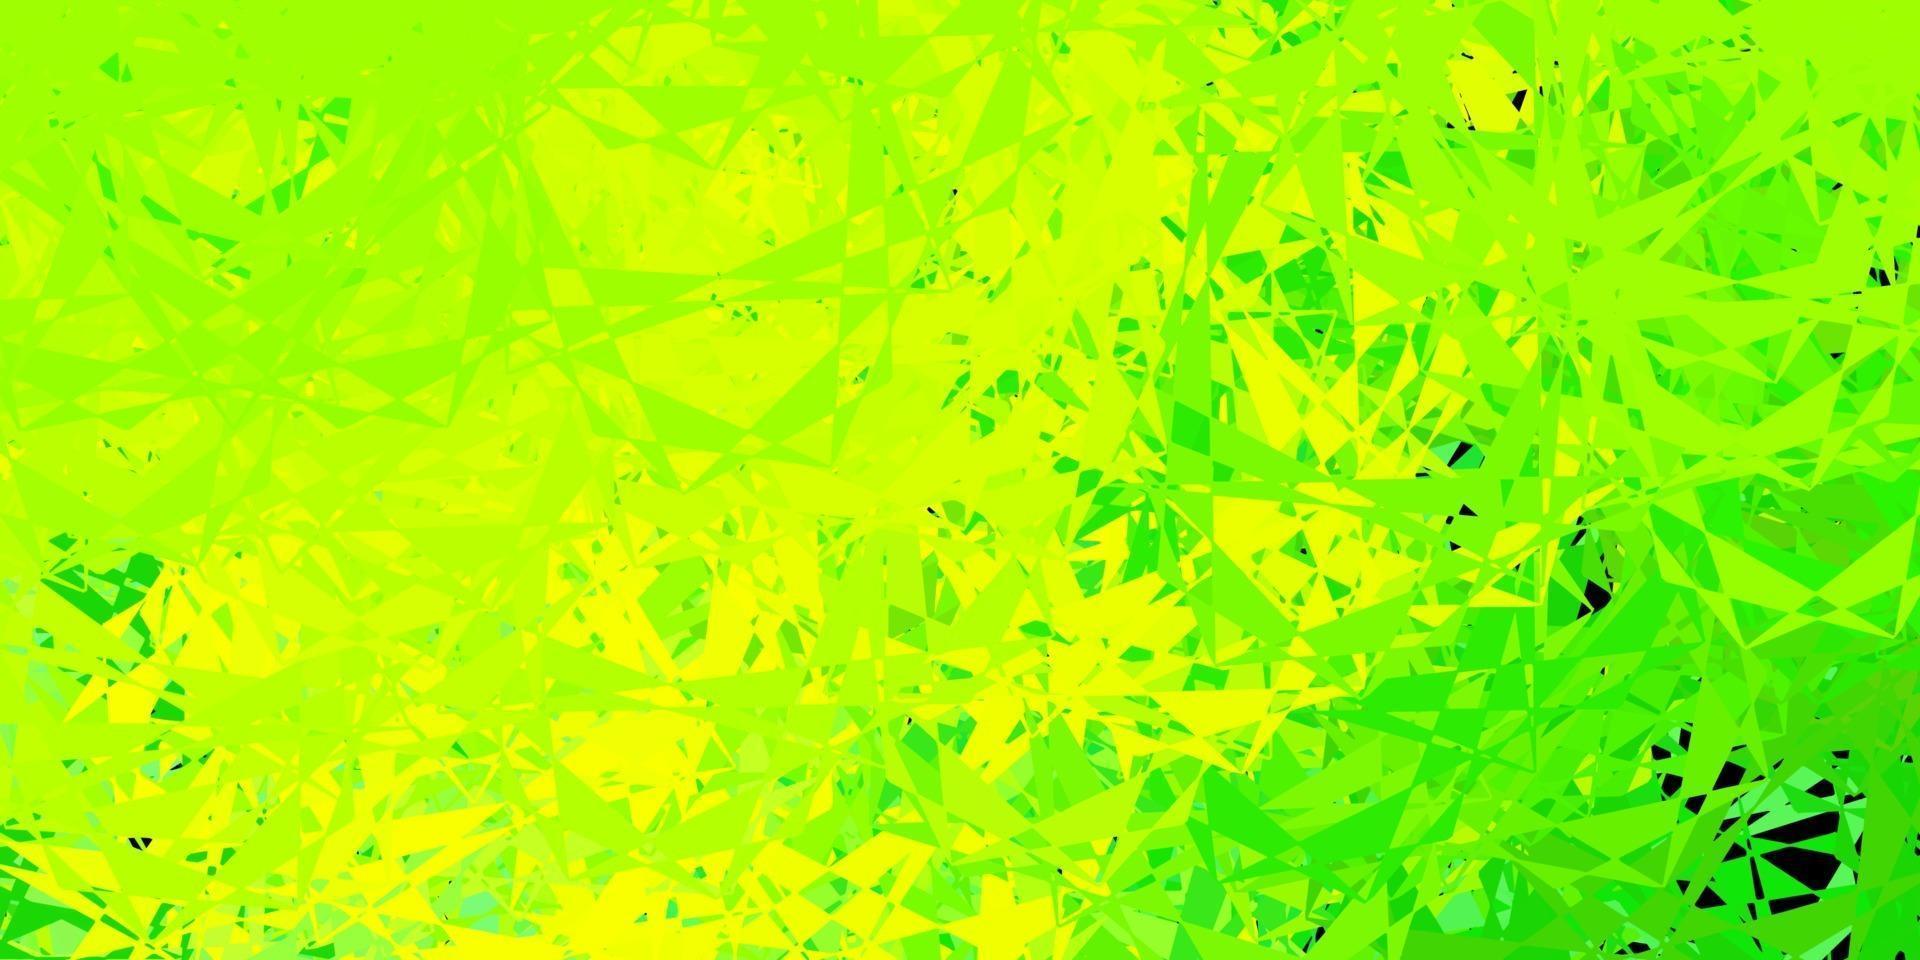 sfondo vettoriale verde chiaro, giallo con triangoli.